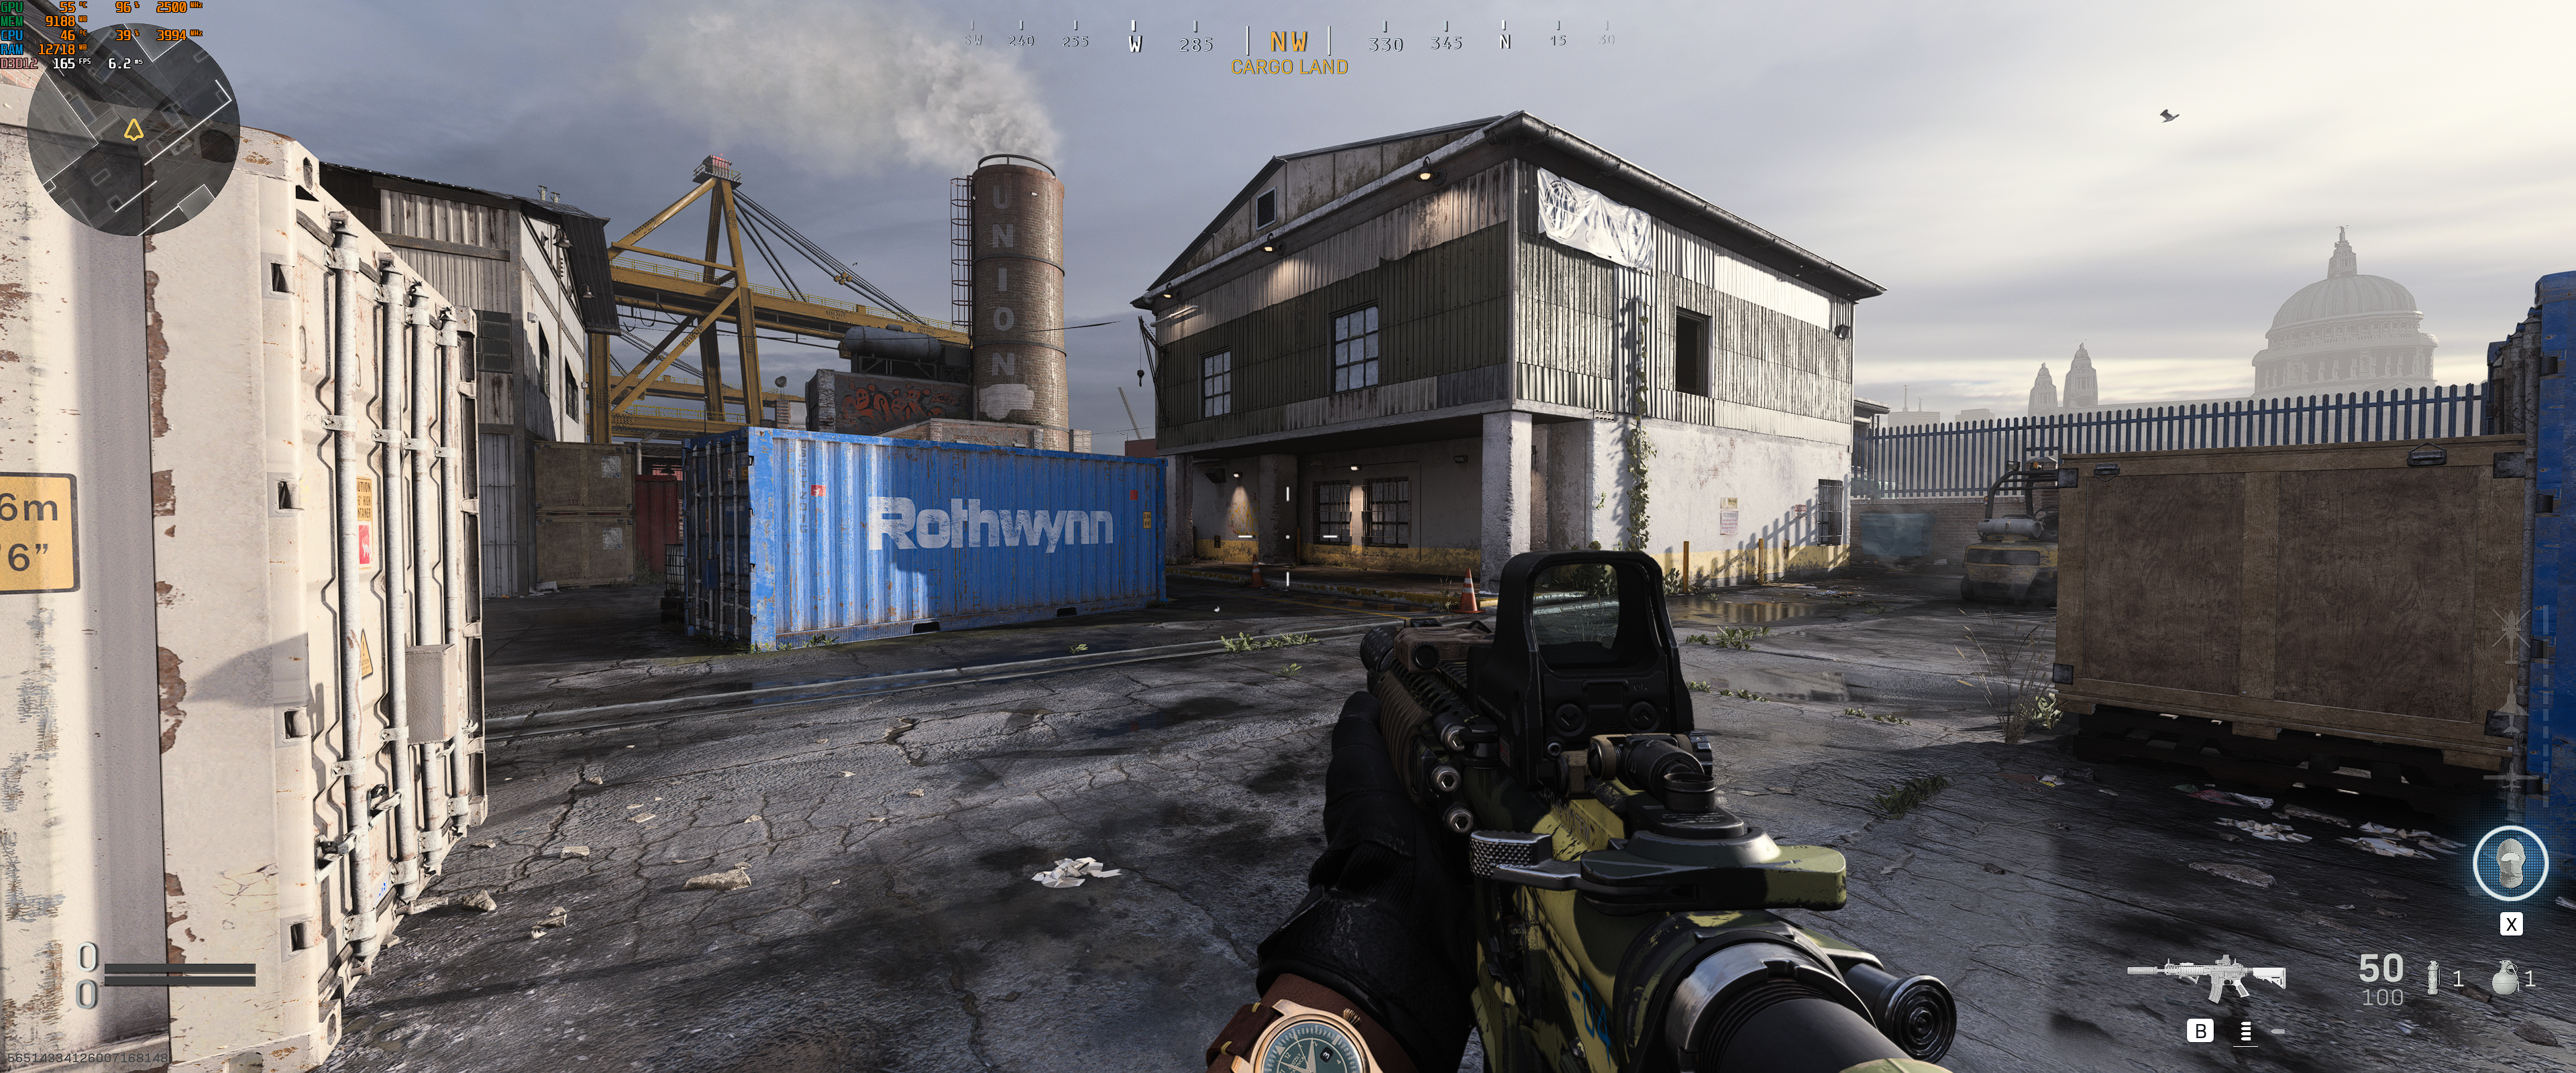 Call of Duty Modern Warfare Remastered im Benchmarktest mit 20